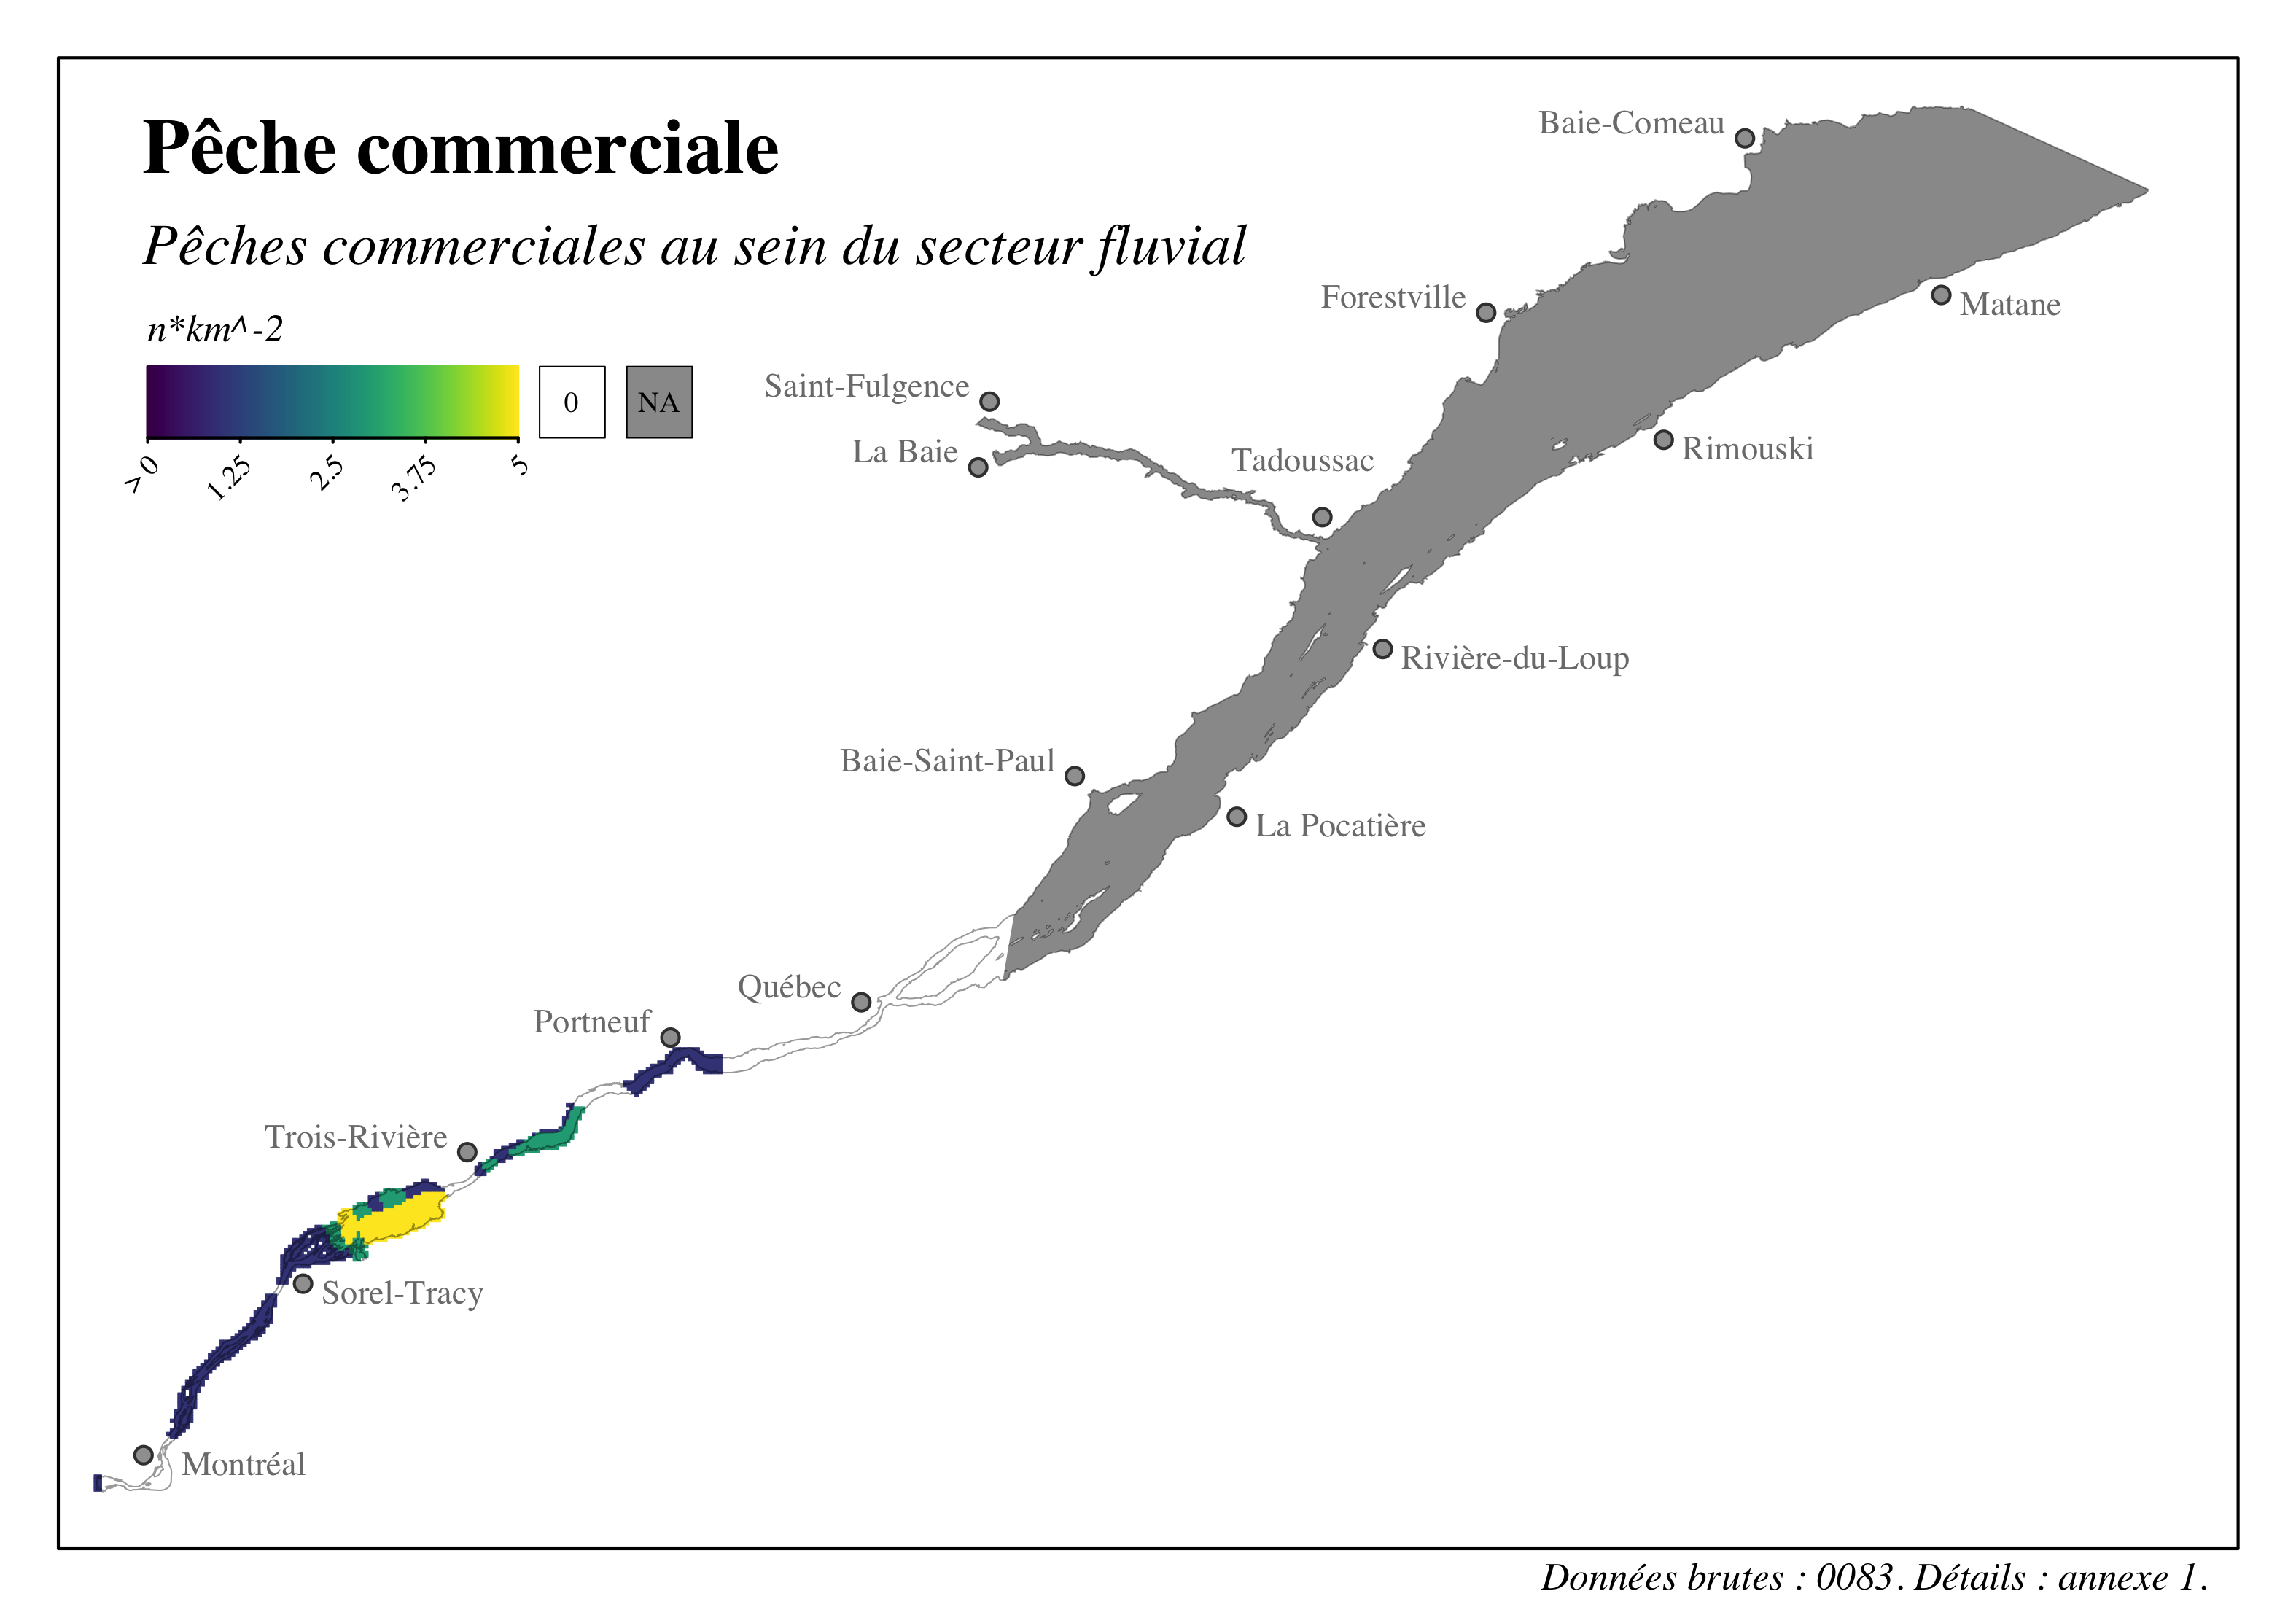 Intensité des activités de pêche commerciale dans le Saint-Laurent - Pêches commerciales secteur fluvial